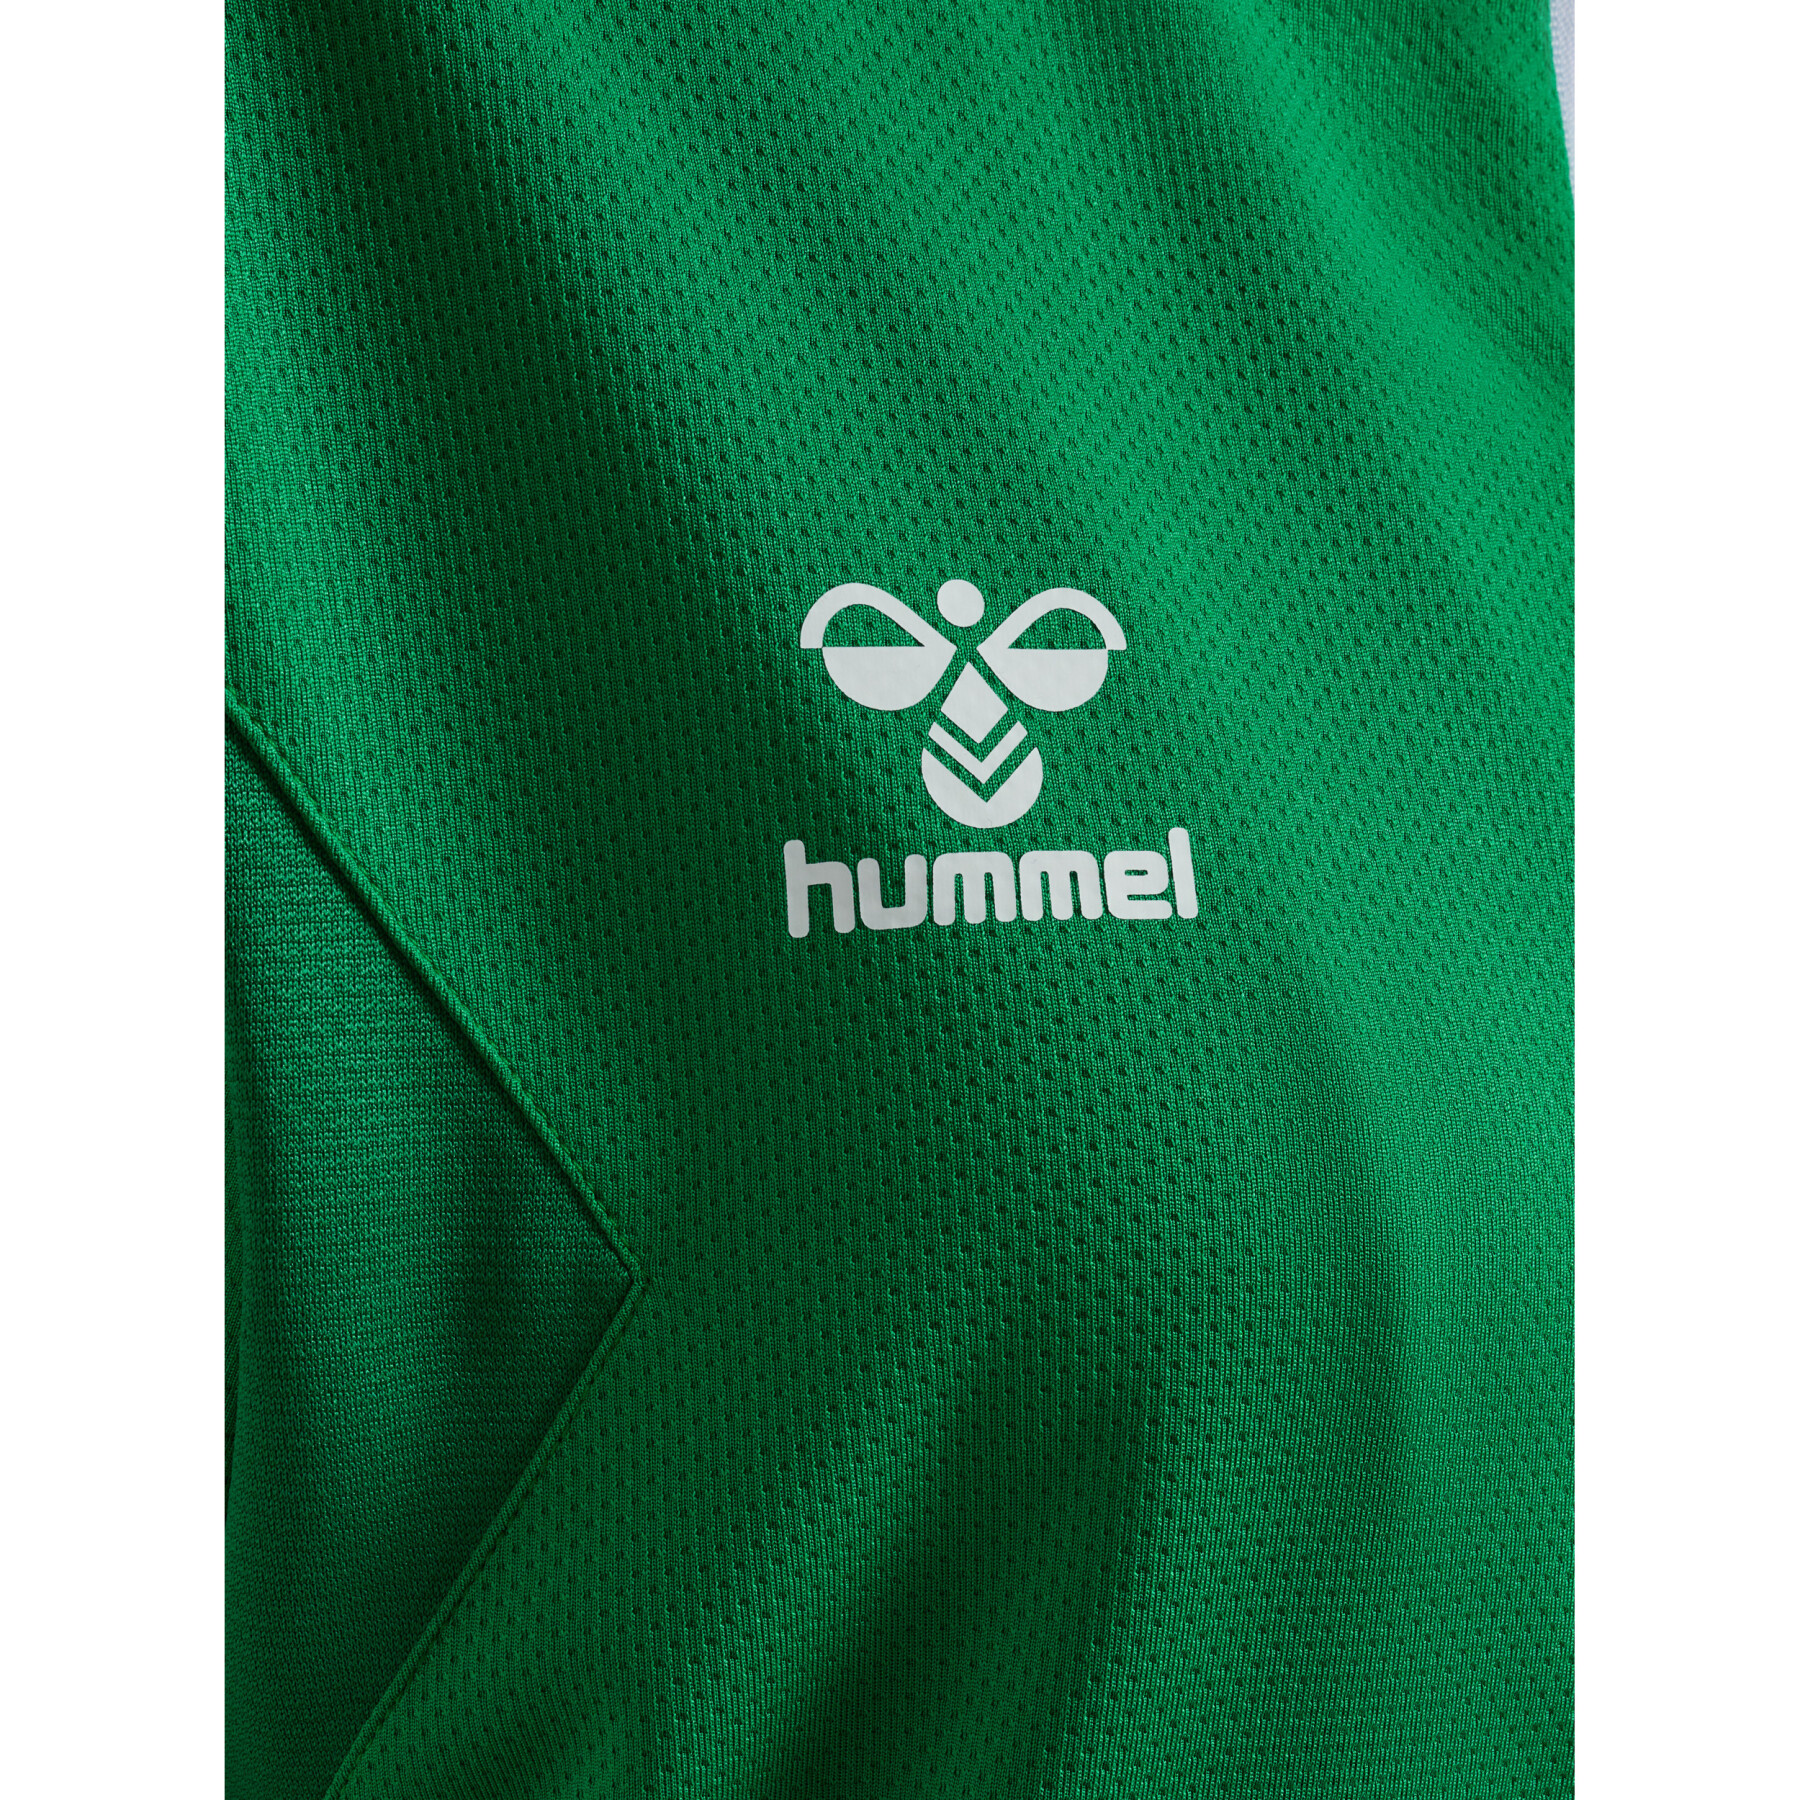 Veste de survêtement à capuche zippé polyester femme Hummel Authentic